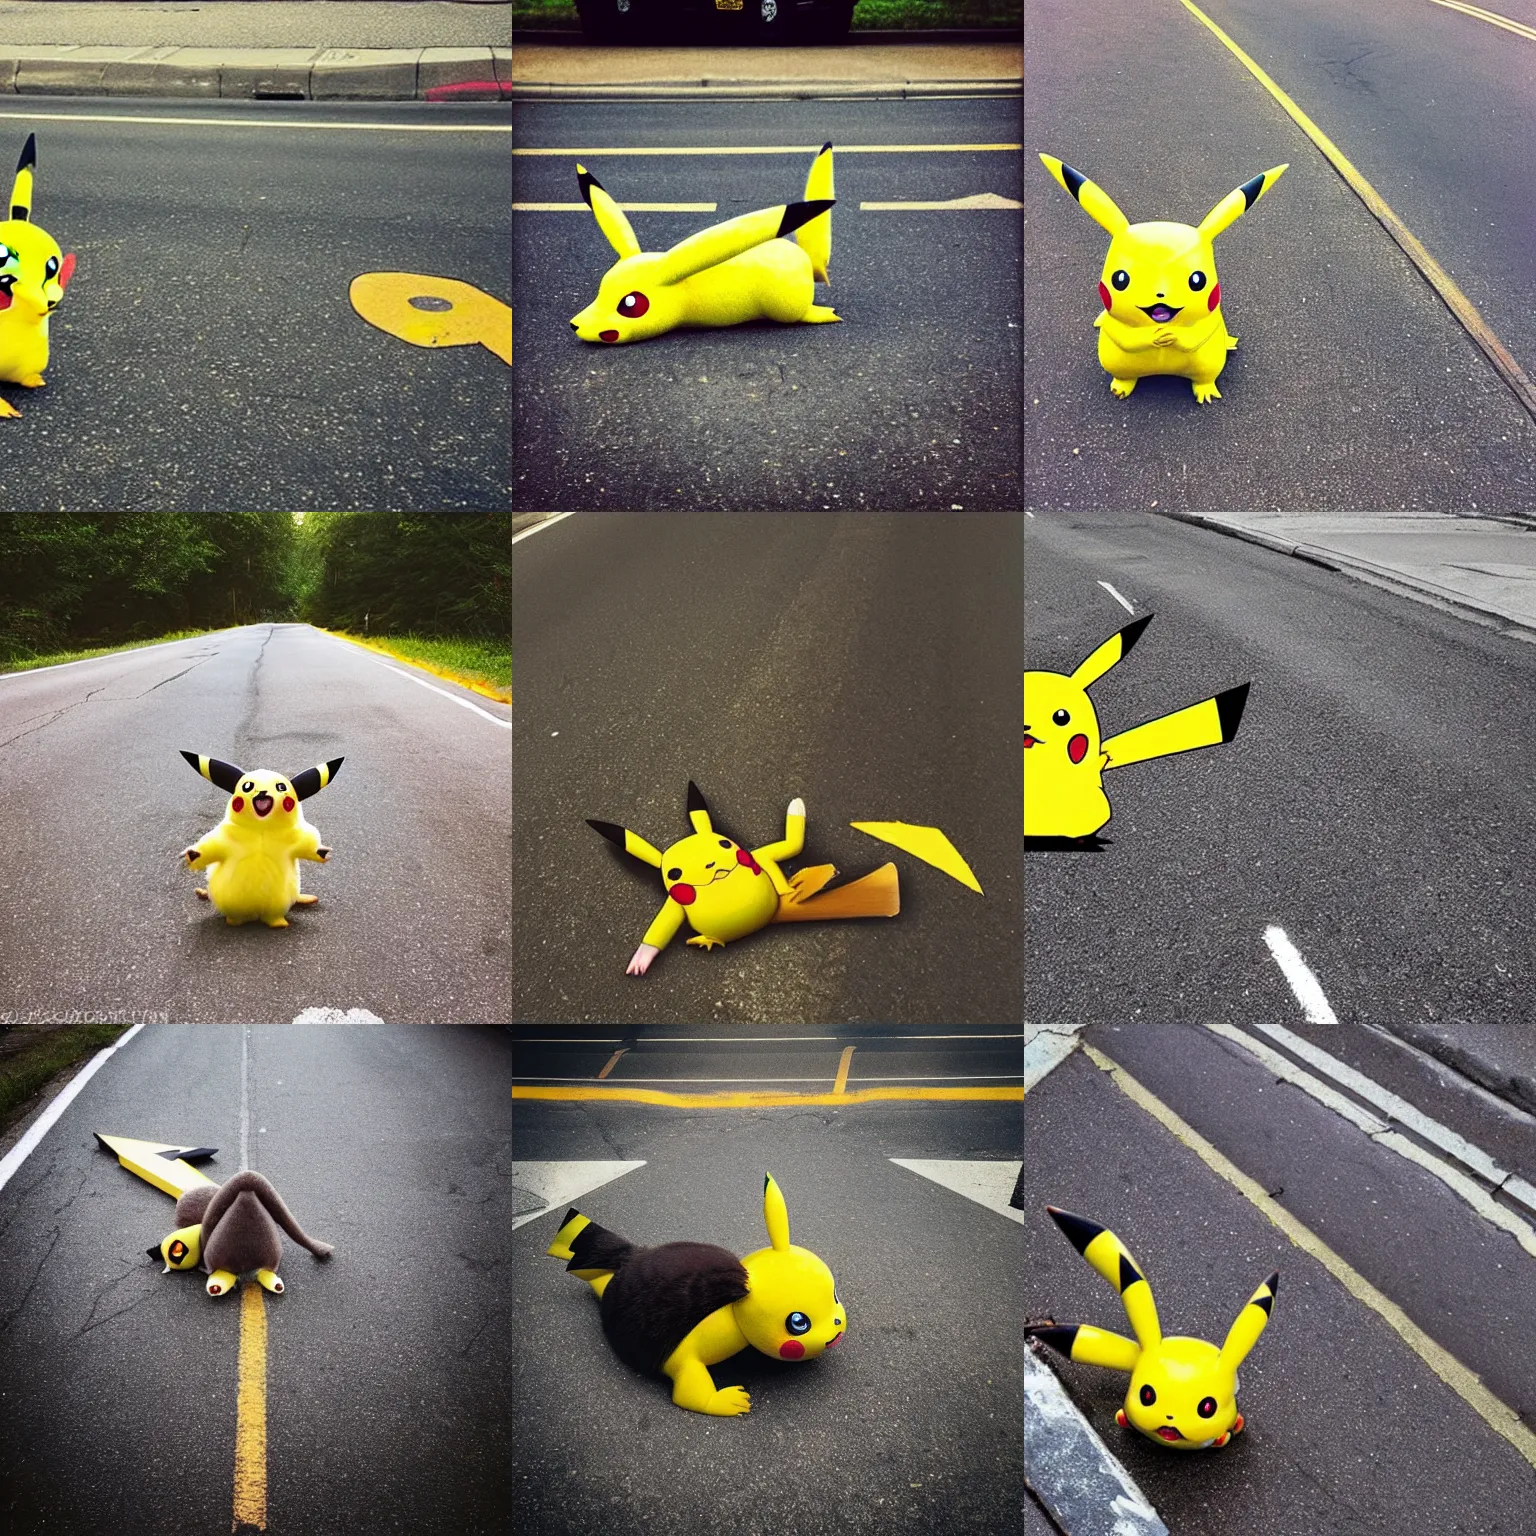 Prompt: “photograph of pikachu roadkill, wtf”